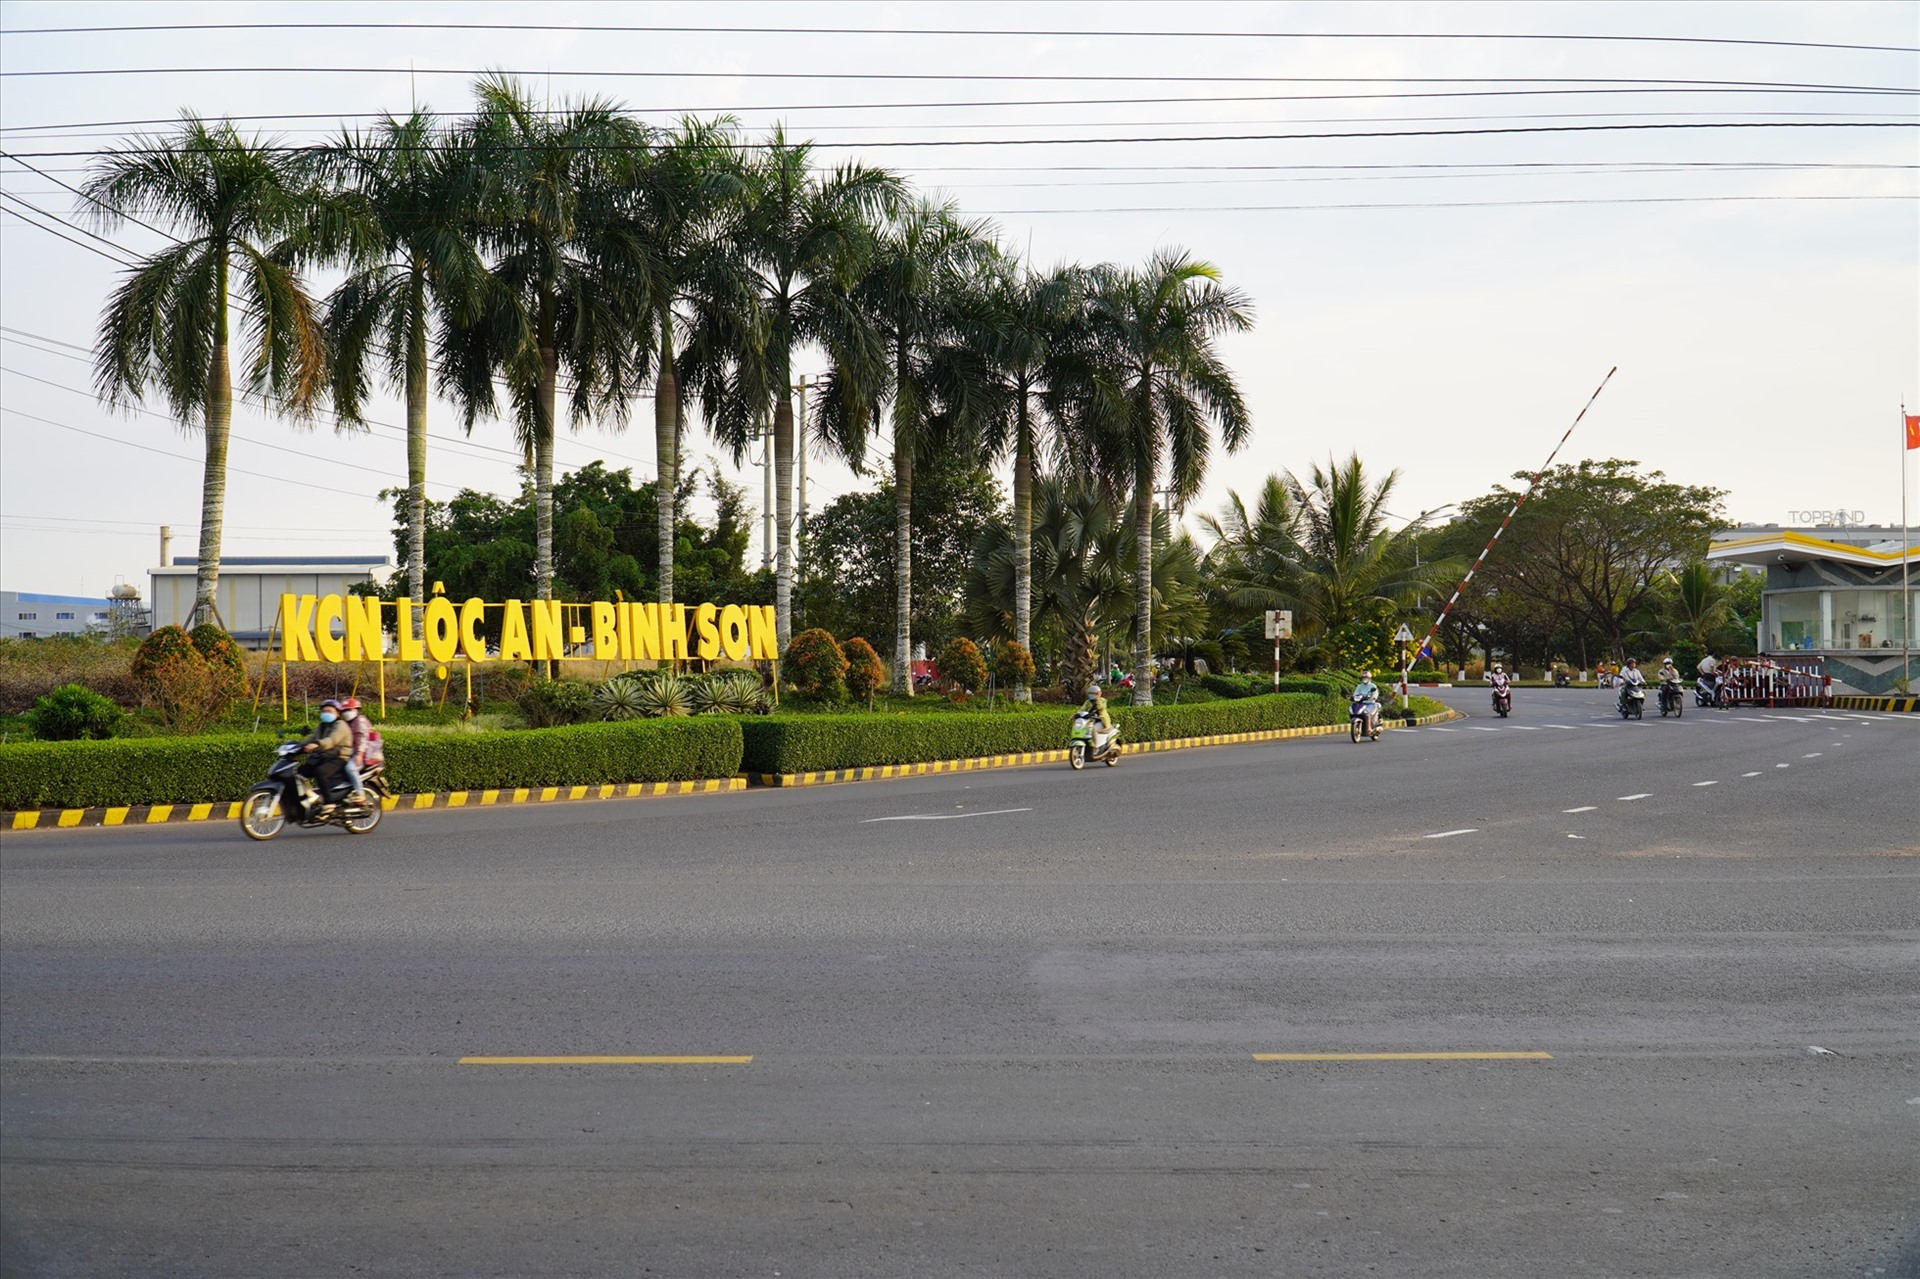 Khu công nghiệp Lộc An - Bình Sơn nằm đối diện khu tái định cư sân bay Long Thành, chỉ cách nhau con đường tỉnh lộ 769. 